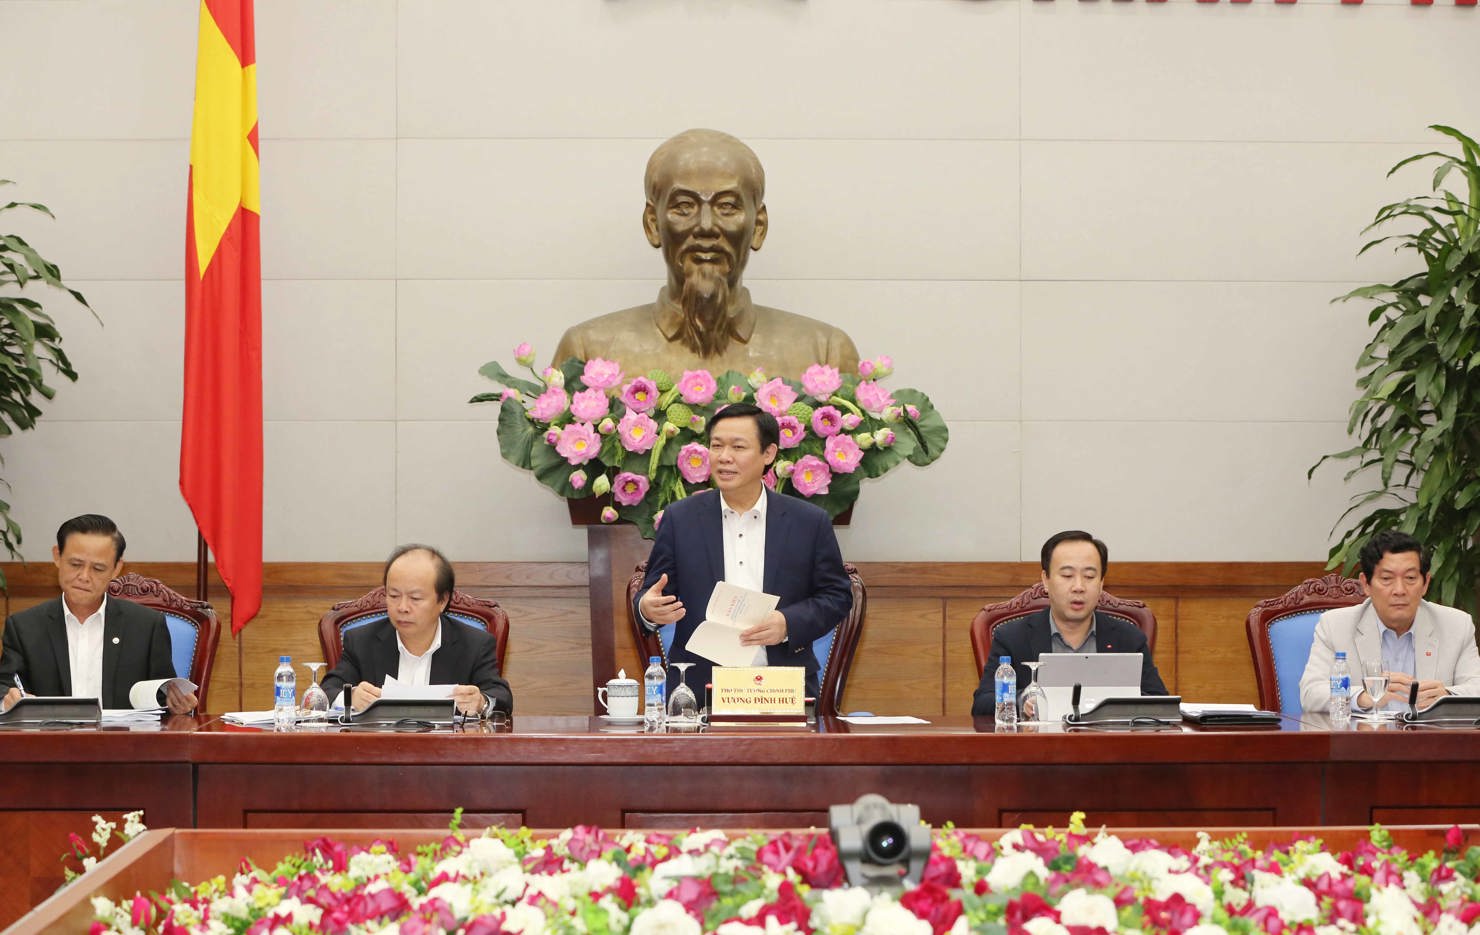 Phó Thủ tướng Vương Đình Huệ nhấn mạnh đổi mới cơ chế hoạt động đơn vị sự nghiệp công lập là một trong năm nhiệm vụ trọng tâm của tái cơ cấu nền kinh tế. Nguồn: chinhphu.vn